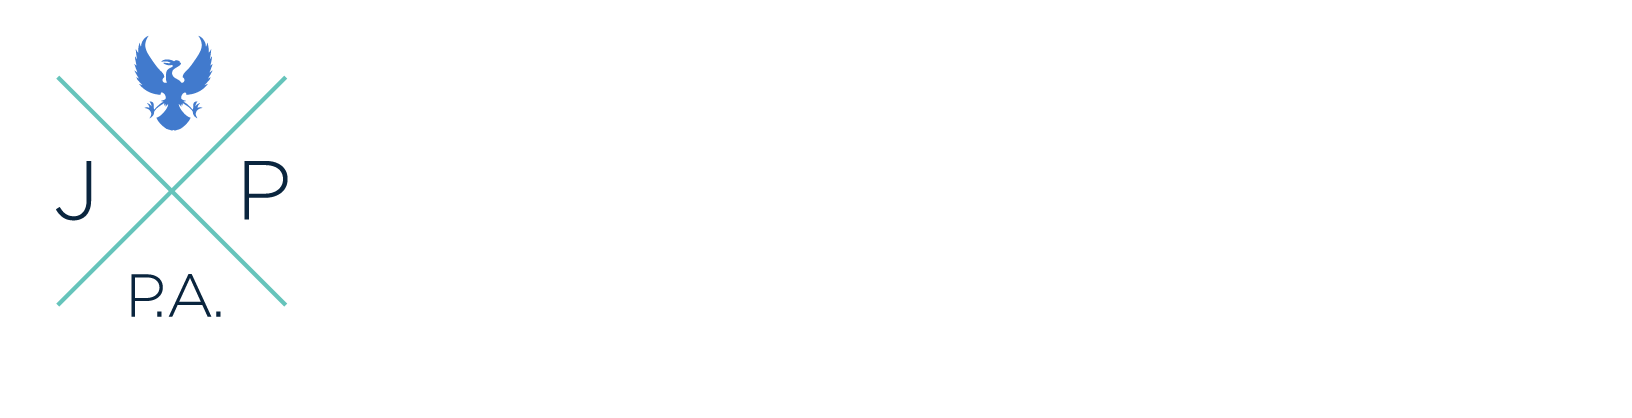 Law office of Jane Park logo white